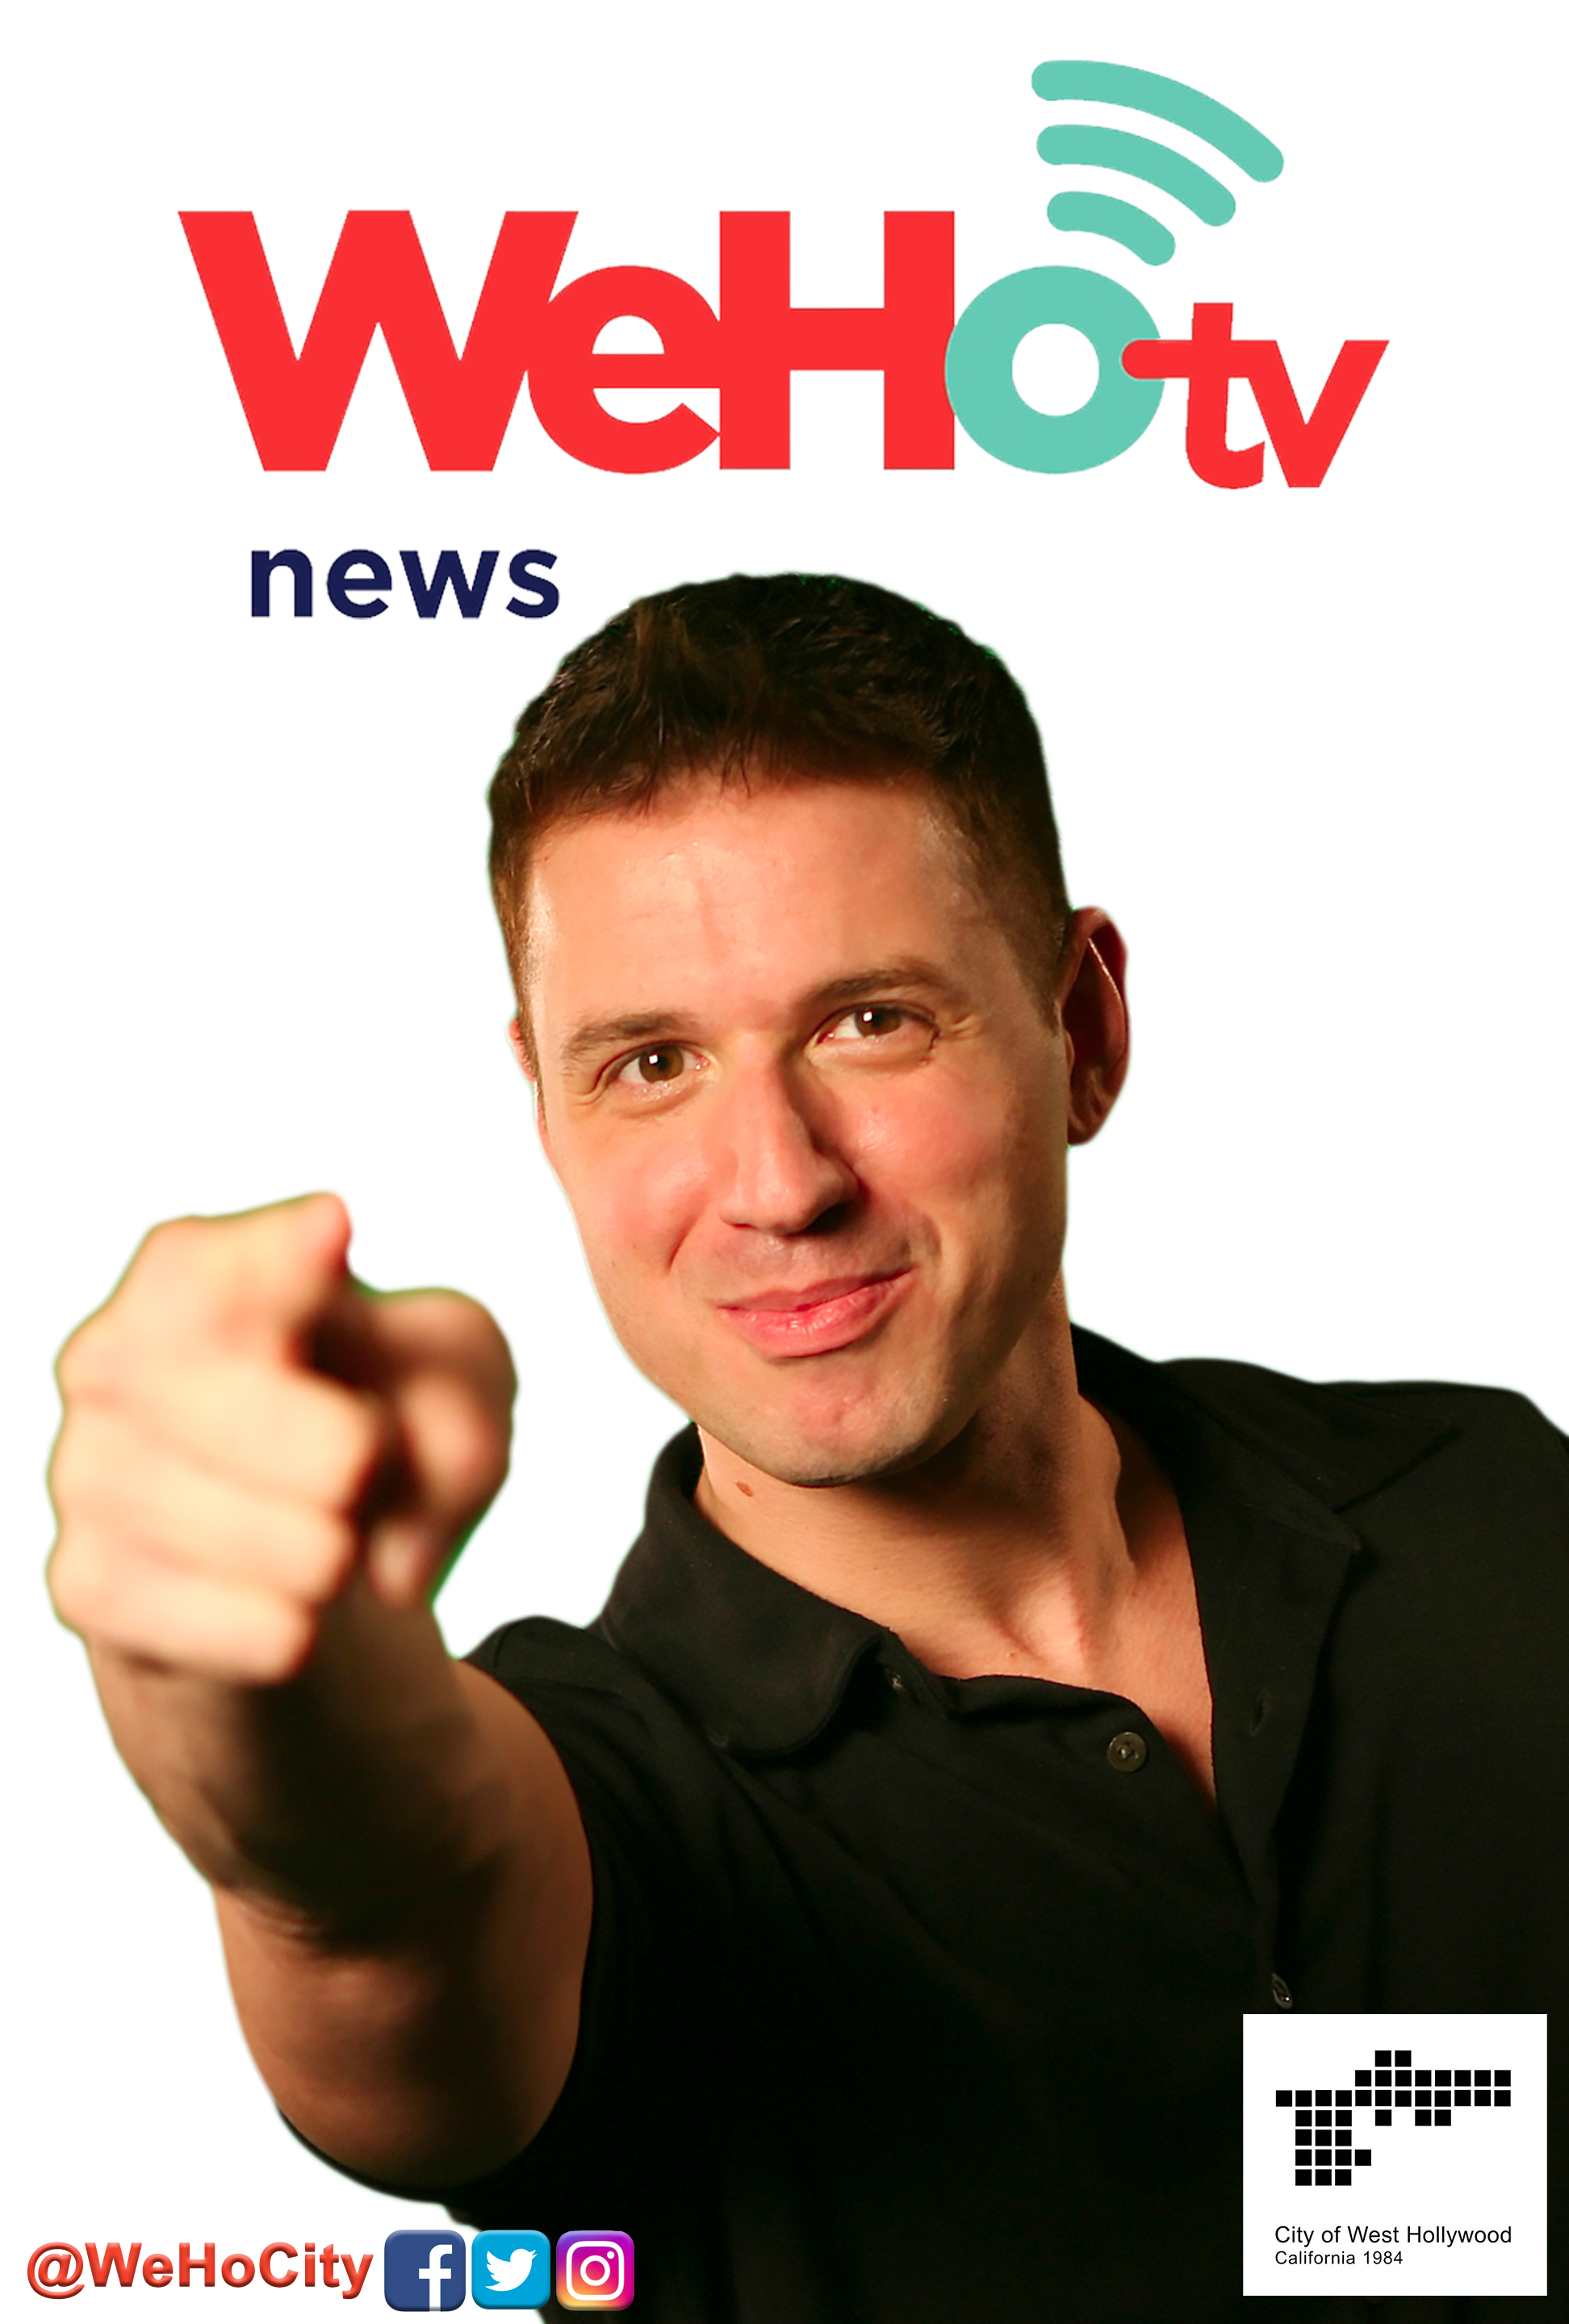 WeHoTV News